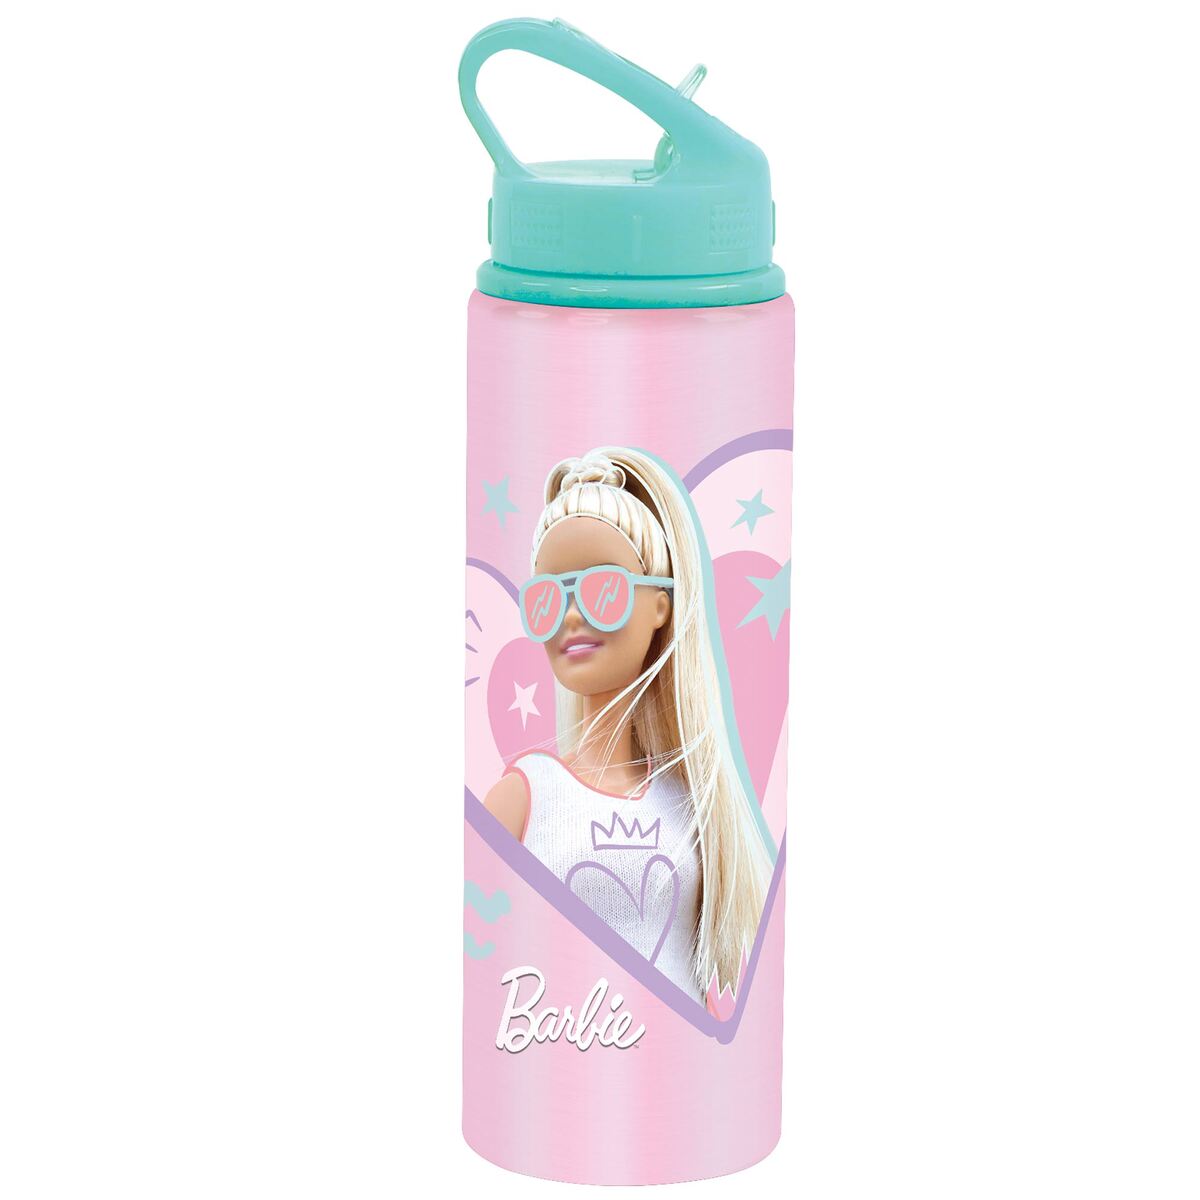 Barbie Aluminum Premium Water Bottle